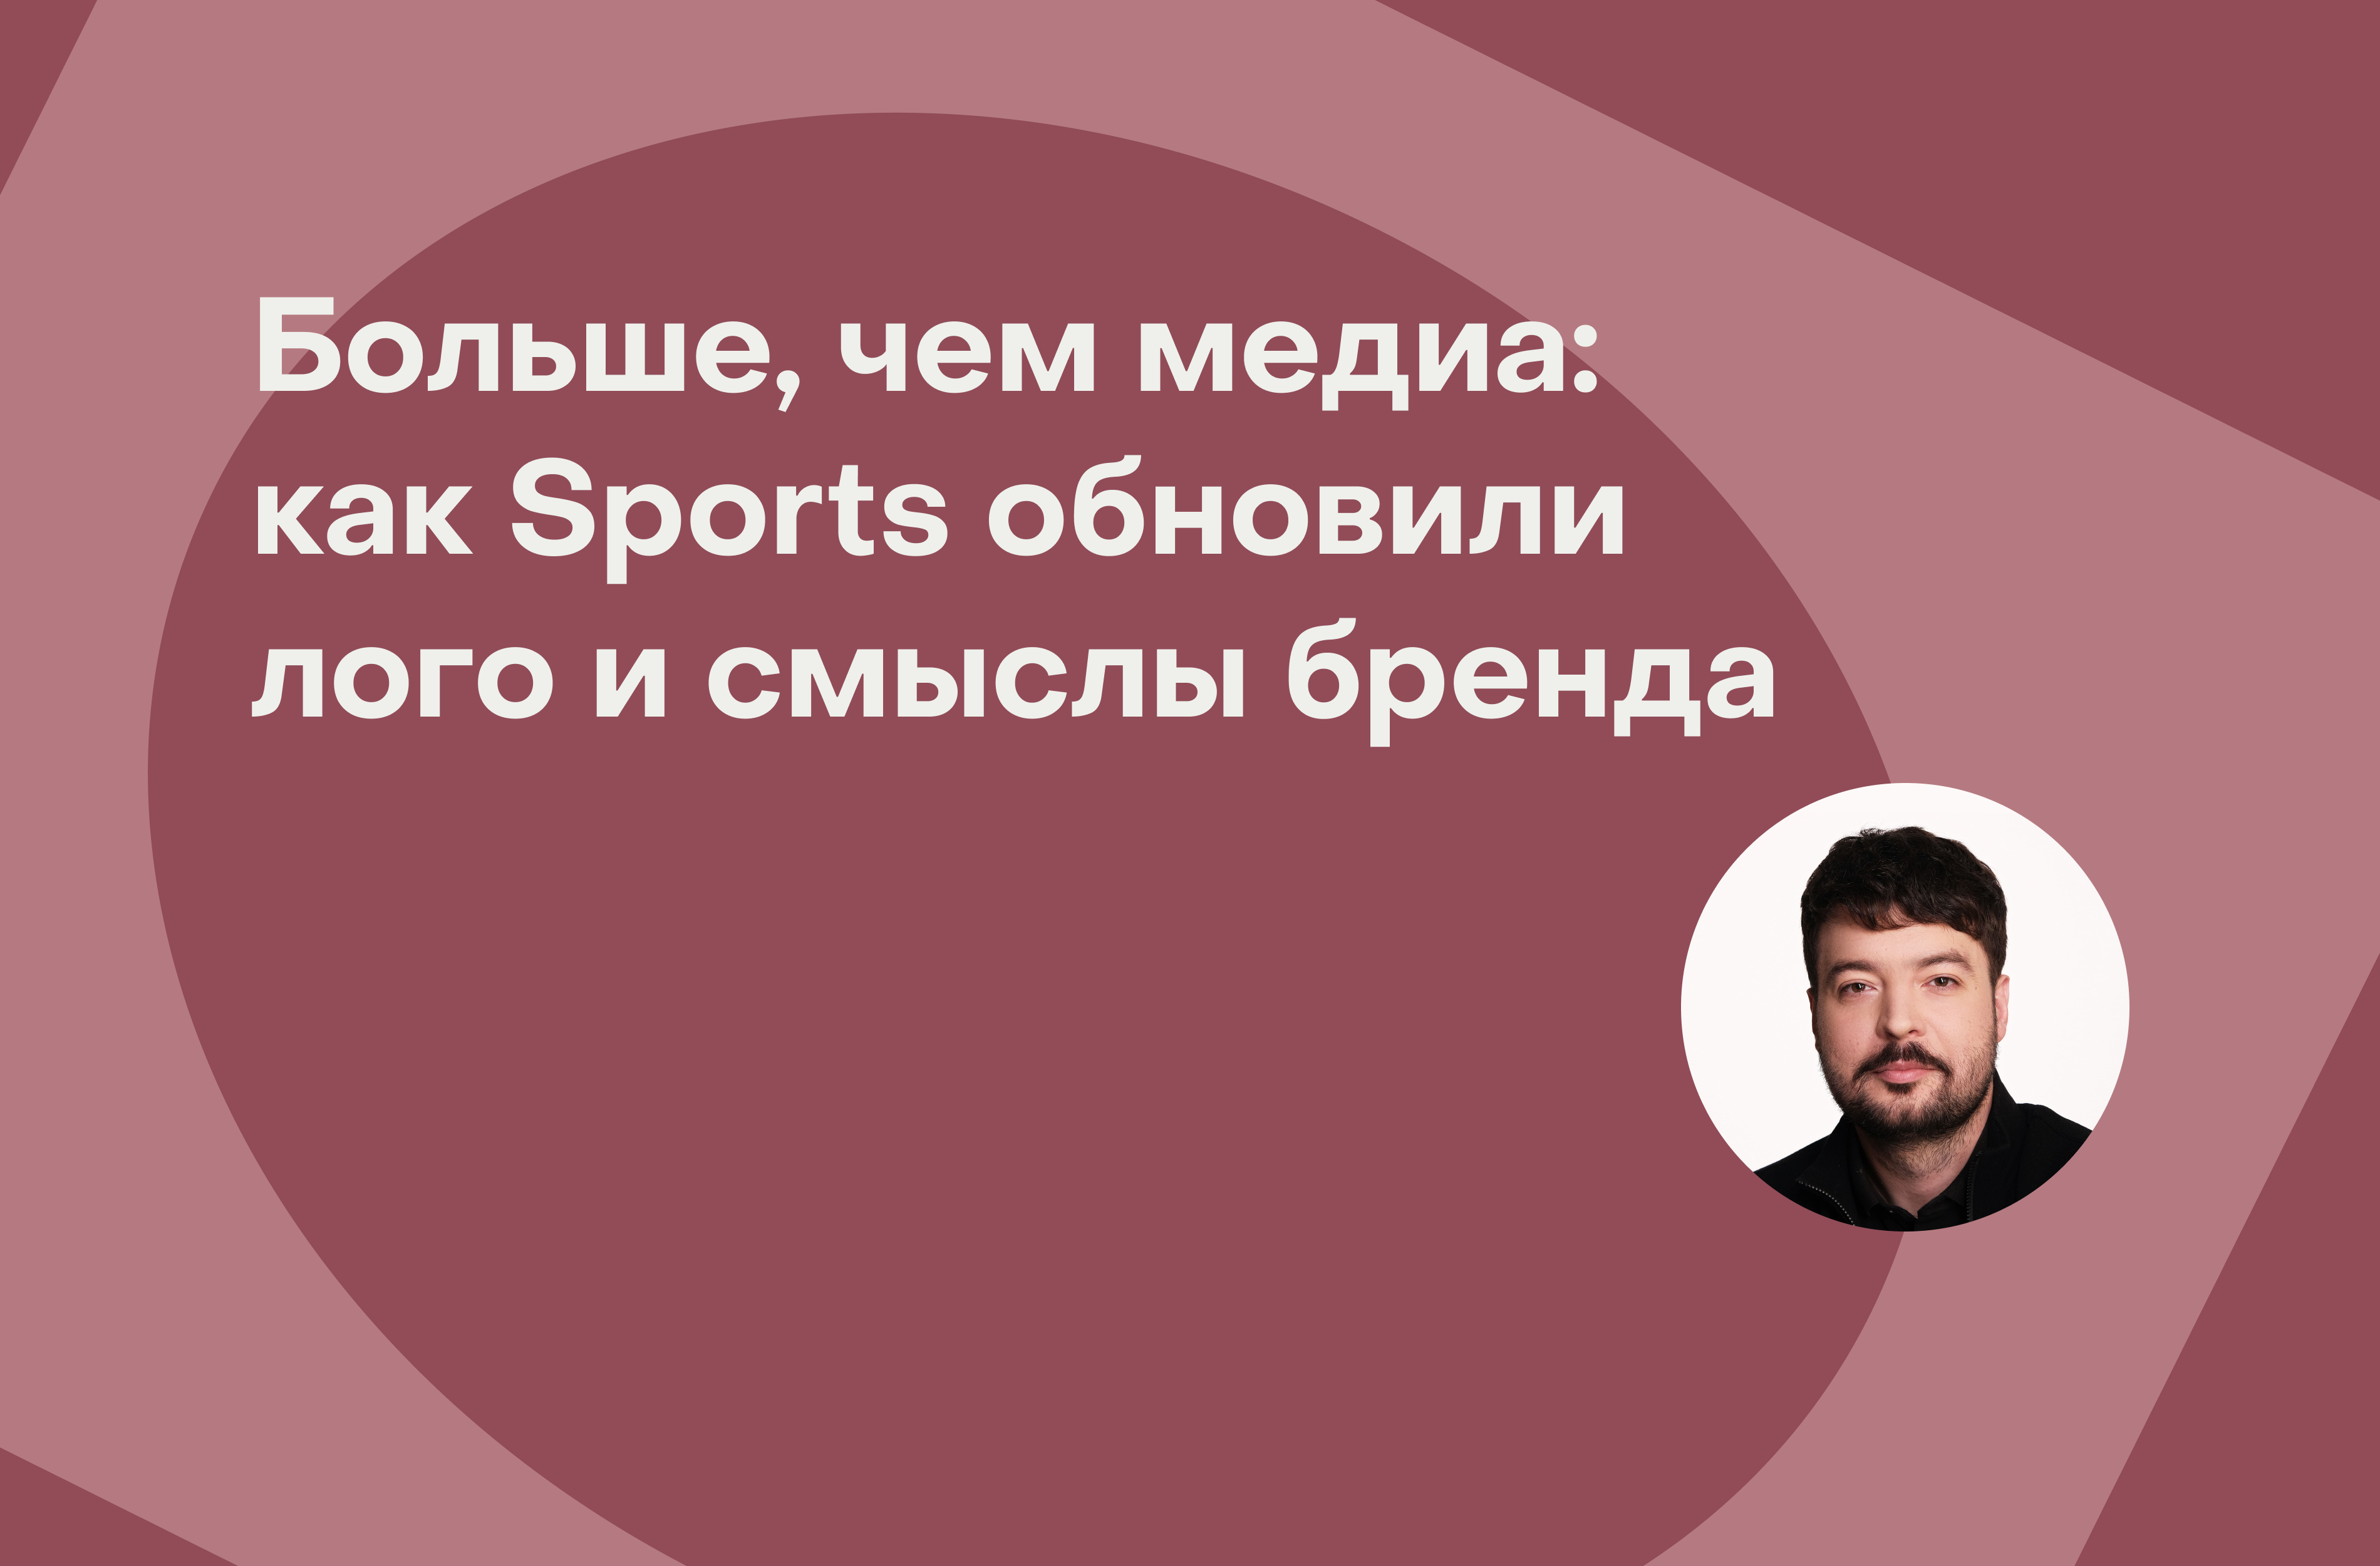 Ребрендинг спустя 18 лет: как изменилось медиа Sports.ru